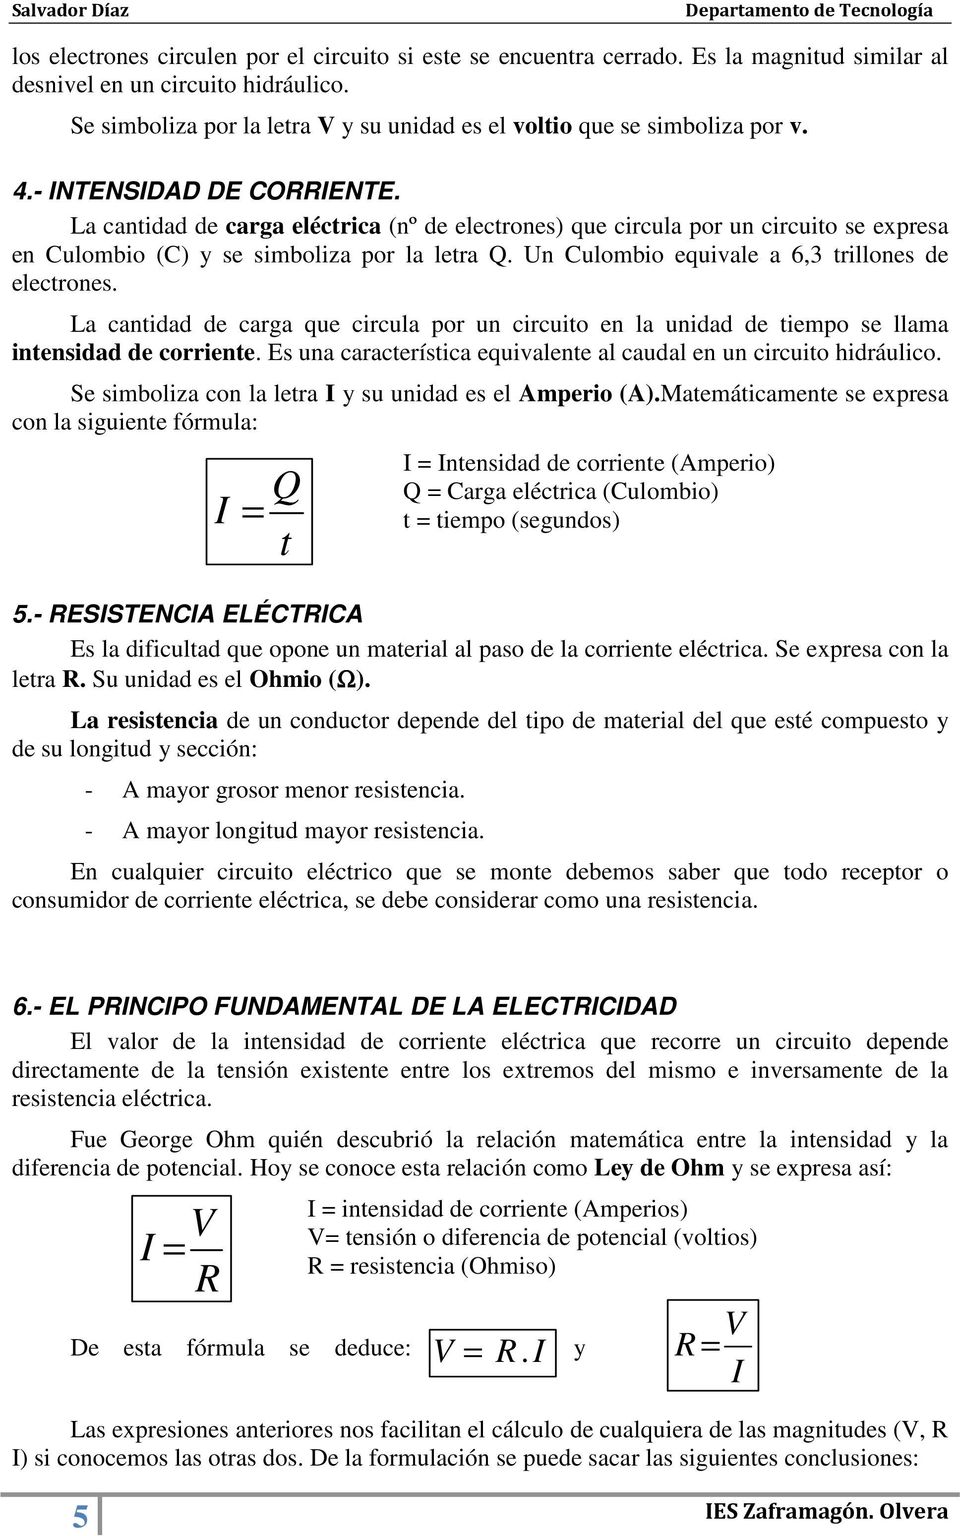 La cantidad de carga eléctrica (nº de electrones) que circula por un circuito se expresa en Culombio (C) y se simboliza por la letra Q. Un Culombio equivale a 6,3 trillones de electrones.